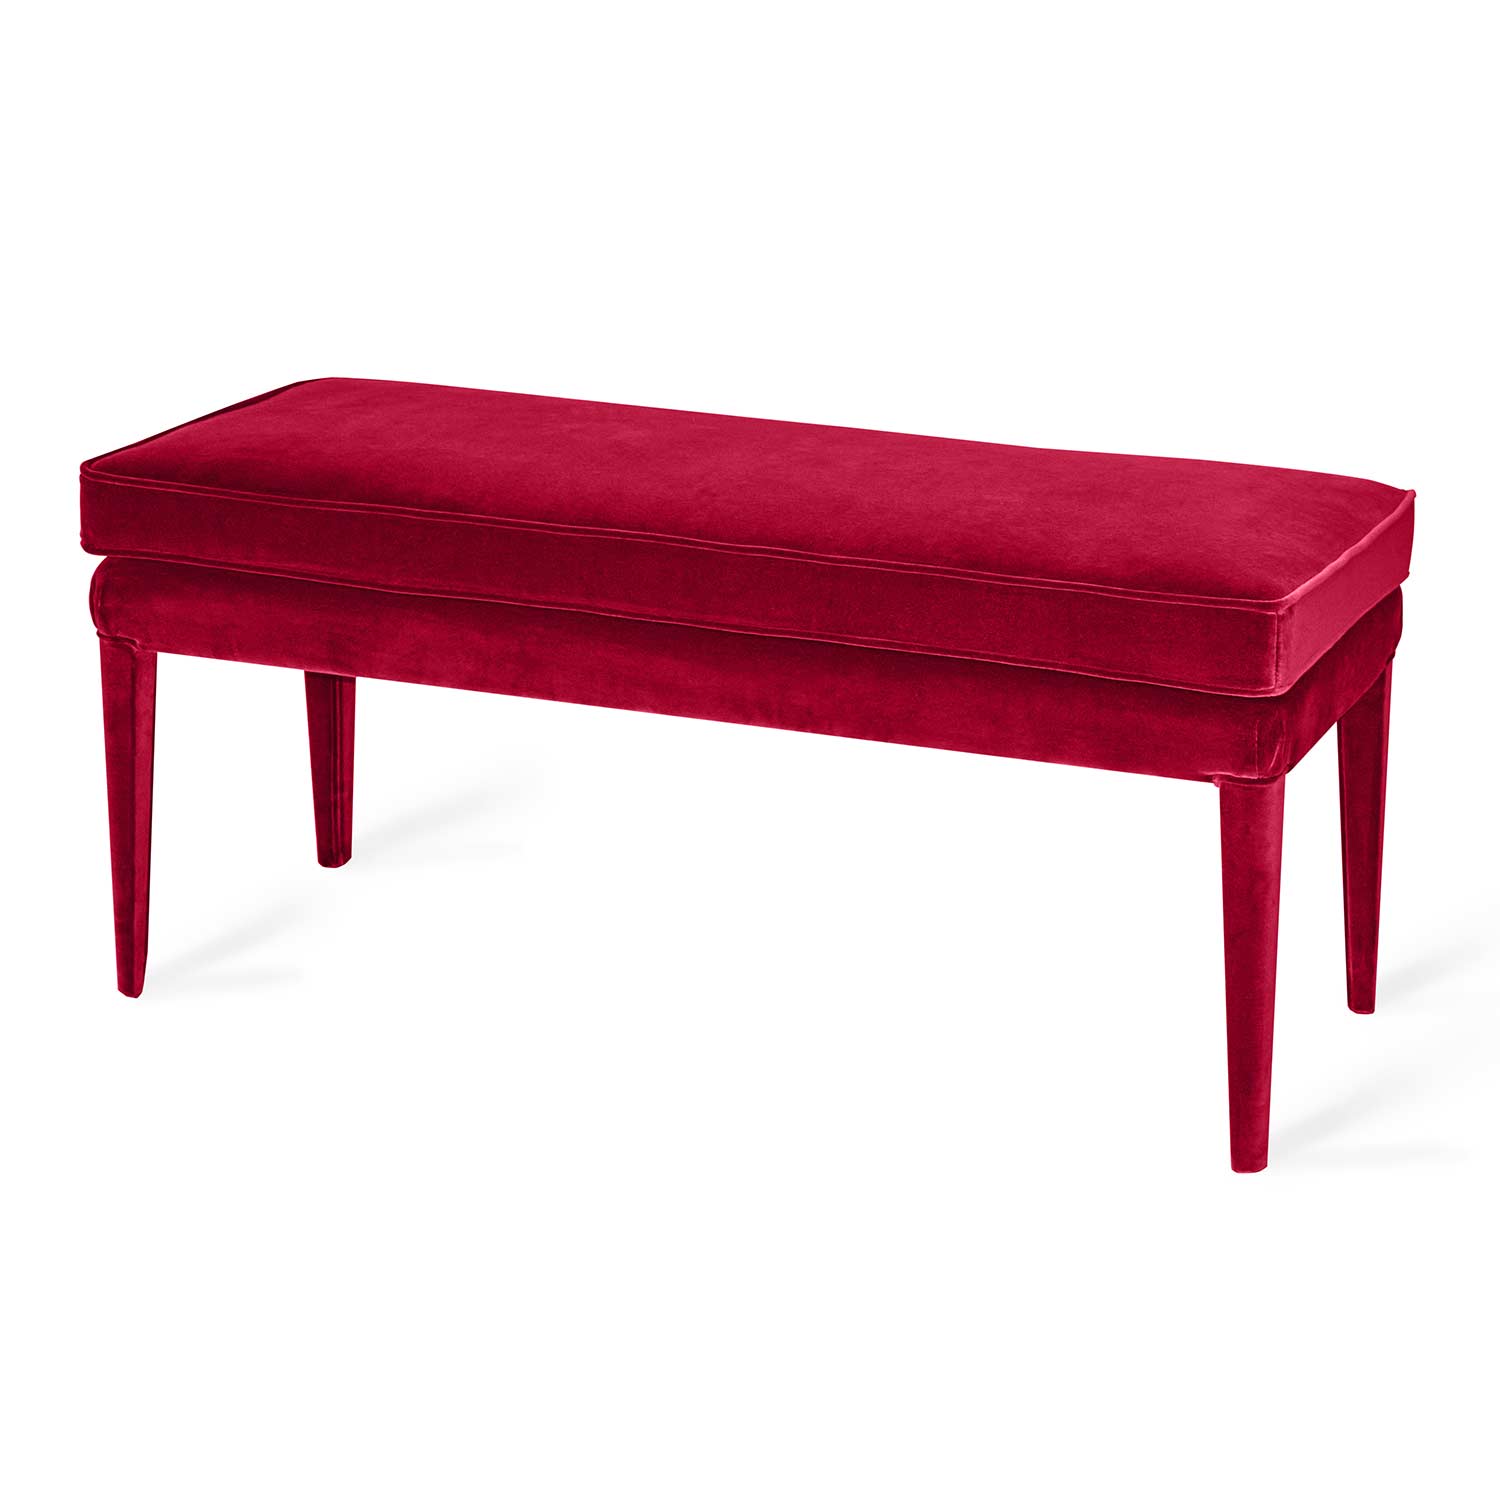 red velvet ottoman bench handmade in italy